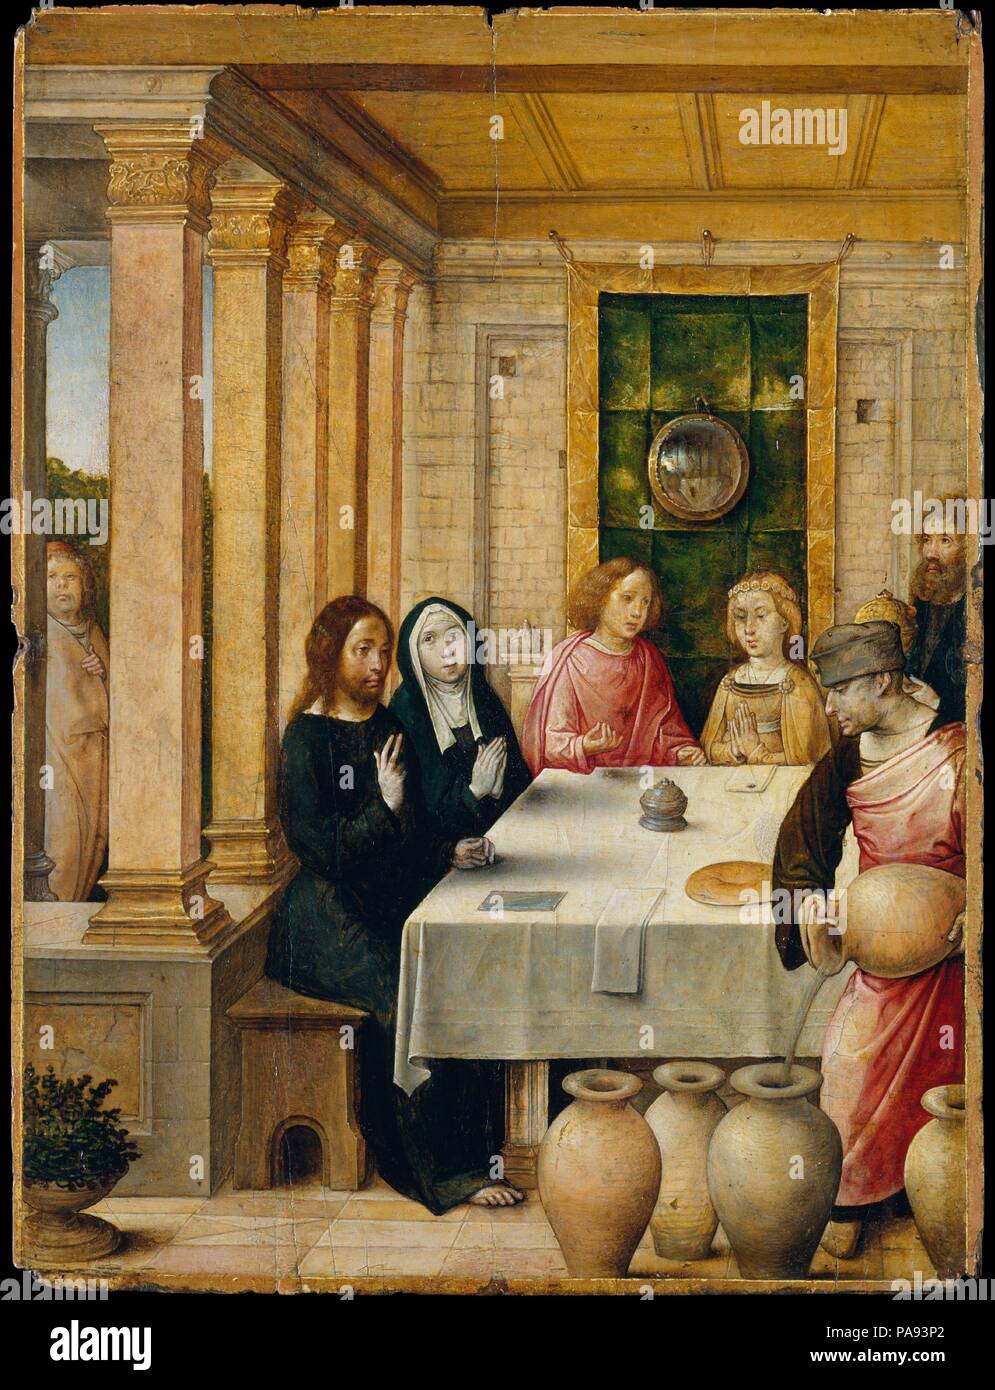 La festa di nozze di Cana. Artista: Juan de Flandes (Netherlandish, attivo dal 1496-morto 1519 Palencia). Dimensioni: 8 1/4 x 6 1/4 in. (21 x 15,9 cm). Data: ca. 1500-1504. Questo è stato uno dei quaranta-sette pannelli raffiguranti la vita di Cristo e la Vergine che sono state fatte per Isabella di Castiglia. L'immagine dell'oggetto è la festa di nozze di Cana, quando Cristo ha effettuato il suo primo miracolo trasformando l acqua in vino. Lo specchio convesso, visto dietro la coppia sposata, è un motivo comune nella pittura Netherlandish. La fase preparatoria underdrawing rivela un numero di dettagli aneddotica che non sono mai state verniciate. Foto Stock